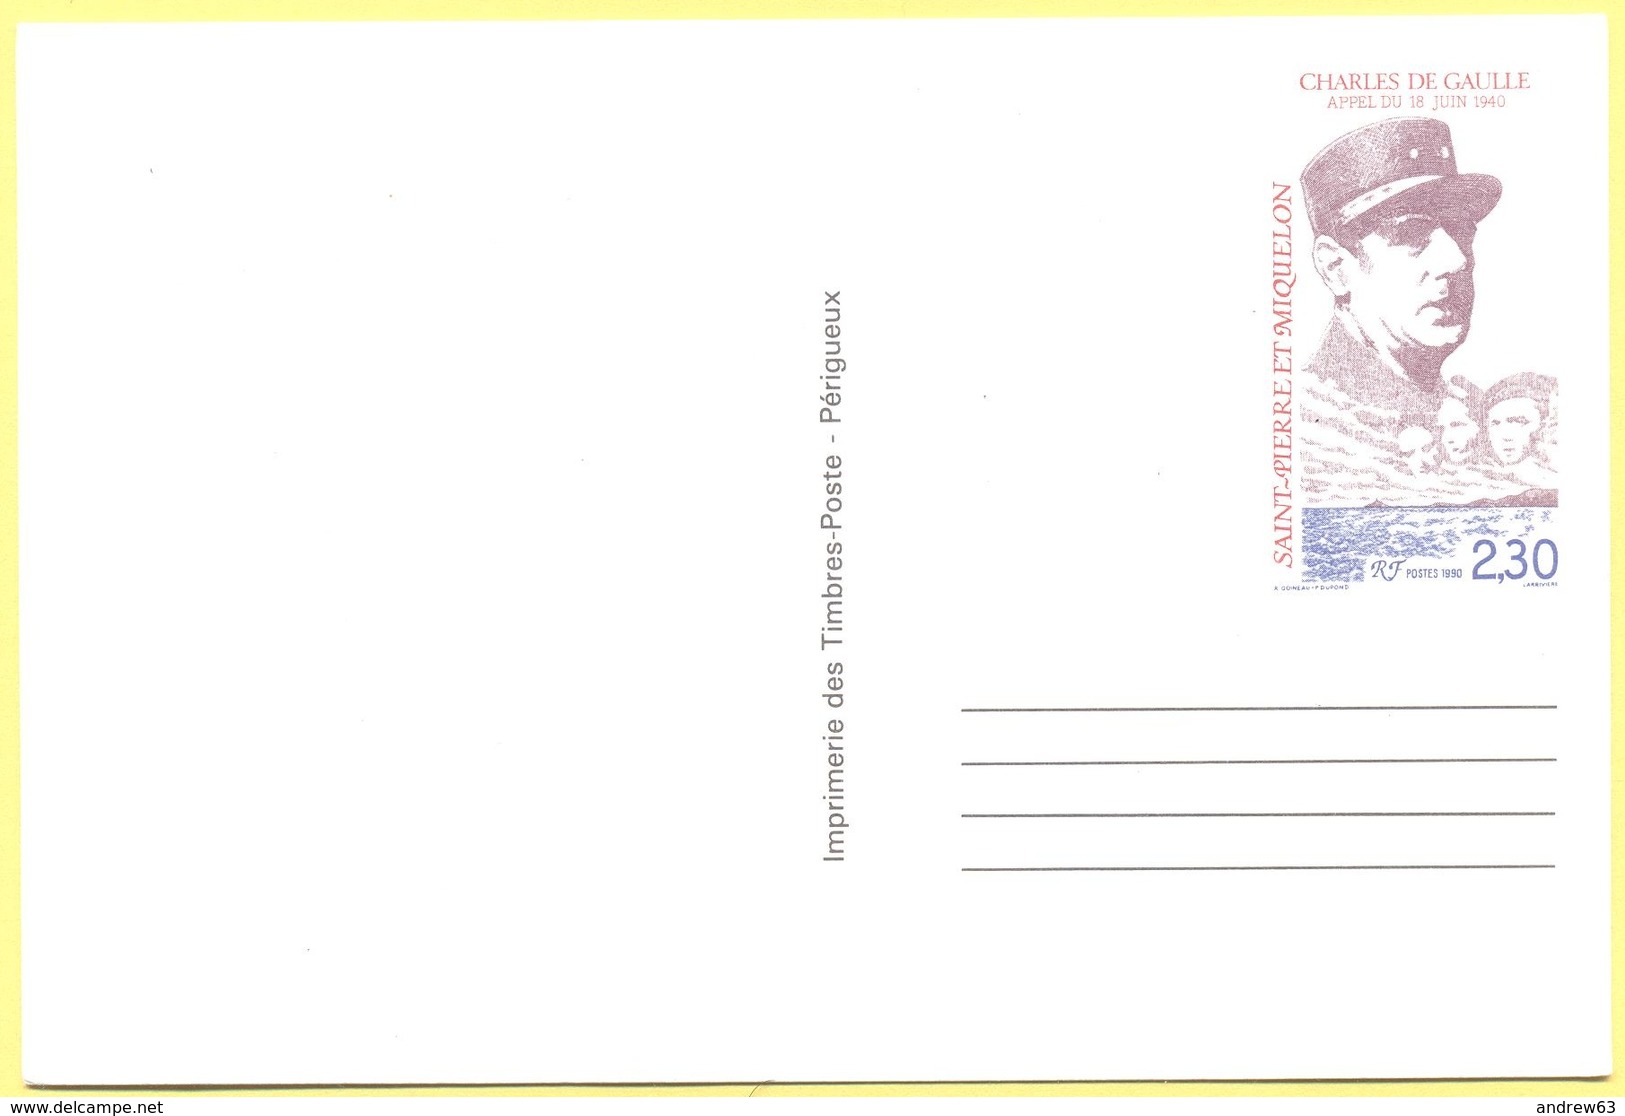 St.Pierre & Miquelon - 2,30 Charles De Gaulle - Carte Postale - Intero Postale - Entier Postal - Postal Stationery - Not - Ganzsachen